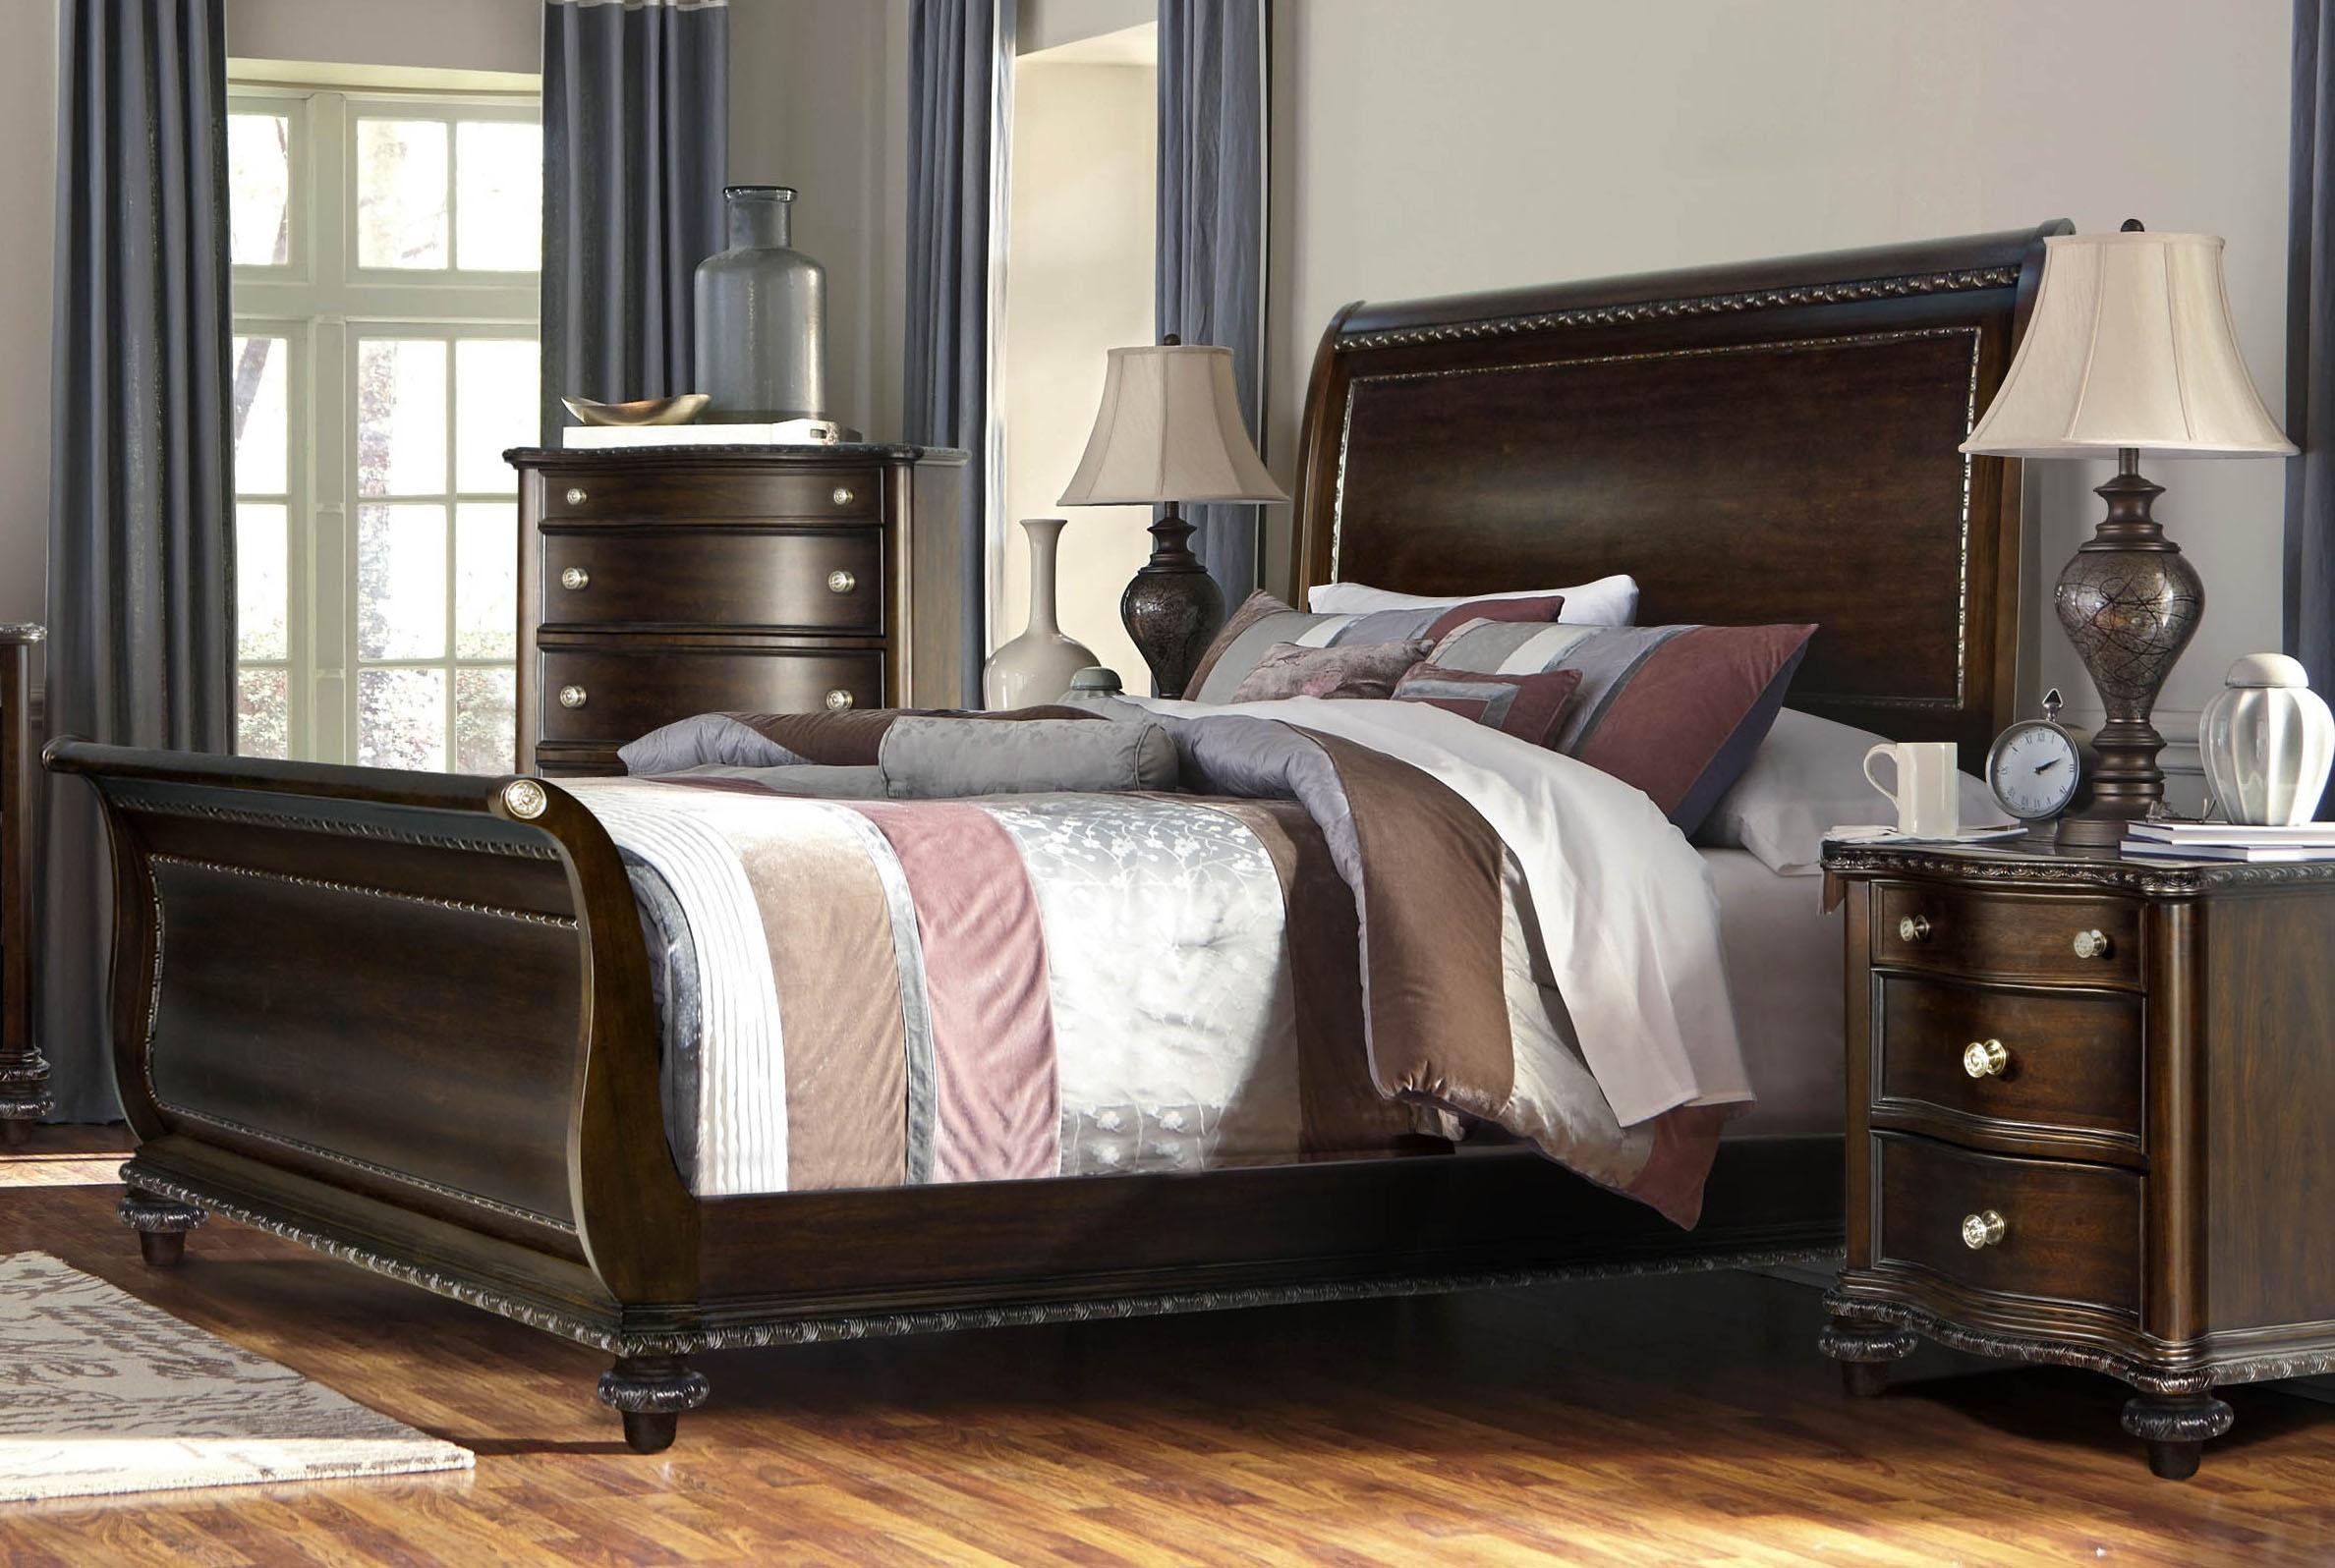 

    
McFerran B195-EK Traditional Dark Walnut Wood Finish King Bedroom Set 3Pcs
